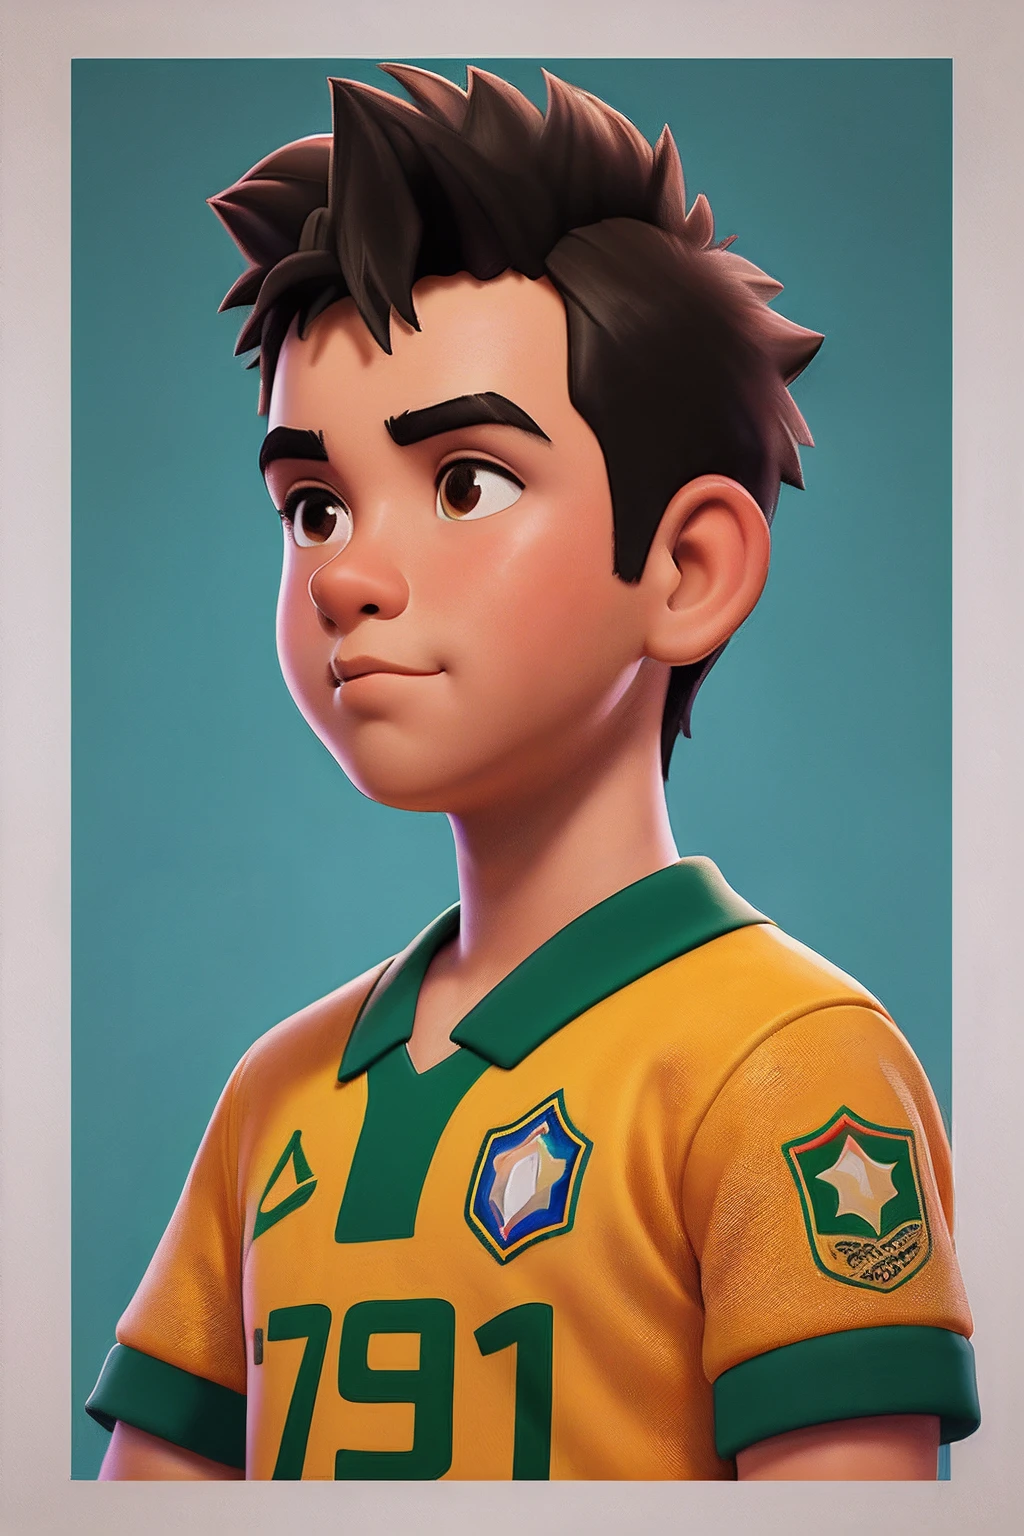 เด็กชายอายุ 15 ปี, ผมสั้น, เสื้อฟุตบอลทีมชาติบราซิล, สีเหลือง,ใน(คุณภาพที่ดีกว่า: 0,8), ภาพประกอบอะนิเมะที่สมบูรณ์แบบ, Retrato ใน close-up extrในo de um garoto,การ์ตูนของเด็กผู้ชายผมยุ่ง ,(งานดิบ),เสื้อสีดำ,เสื้อสีดำ,ทาสีบนใบหน้า, ภาพบุคคลดิจิทัล, การ์ตูนภาพวาดดิจิตอล, ภาพประกอบของวิกิฮาว, ภาพภาพประกอบโดยละเอียด, ภาพประกอบดิจิทัล -, ภาพประกอบดิจิตอลด้าน, ภาพการ์ตูน, ภาพประกอบดิจิตอลสี, แนวตั้งเก๋ๆ, ภาพศิลปะดิจิทัล,(คุณภาพที่ดีกว่า),(คุณภาพสูง)พื้นหลังเรืองแสง